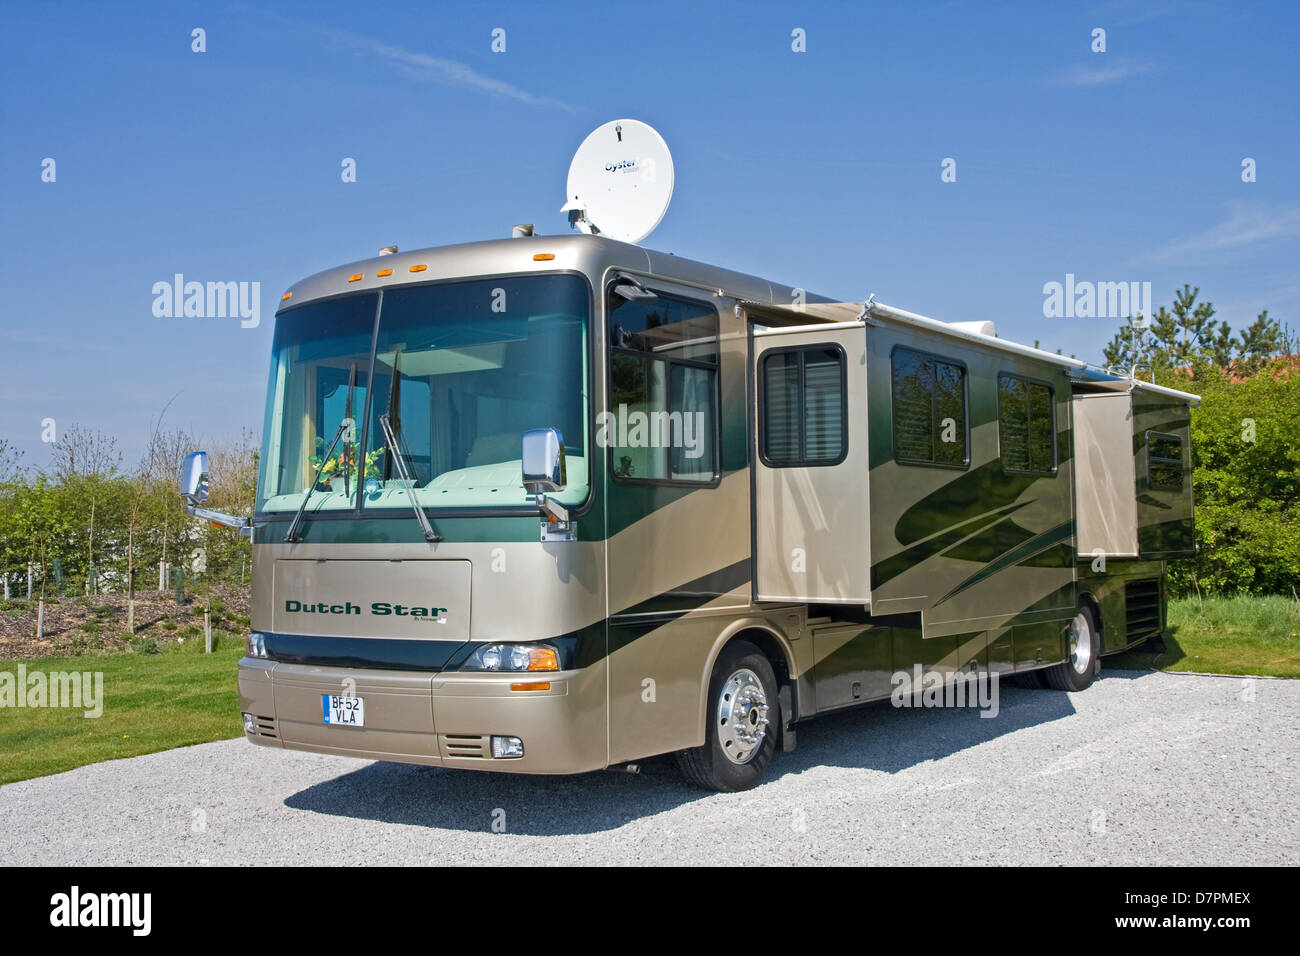 american-dutch-star-by-newmar-luxury-motorhome-on-caravan-site-D7PMEX.jpg